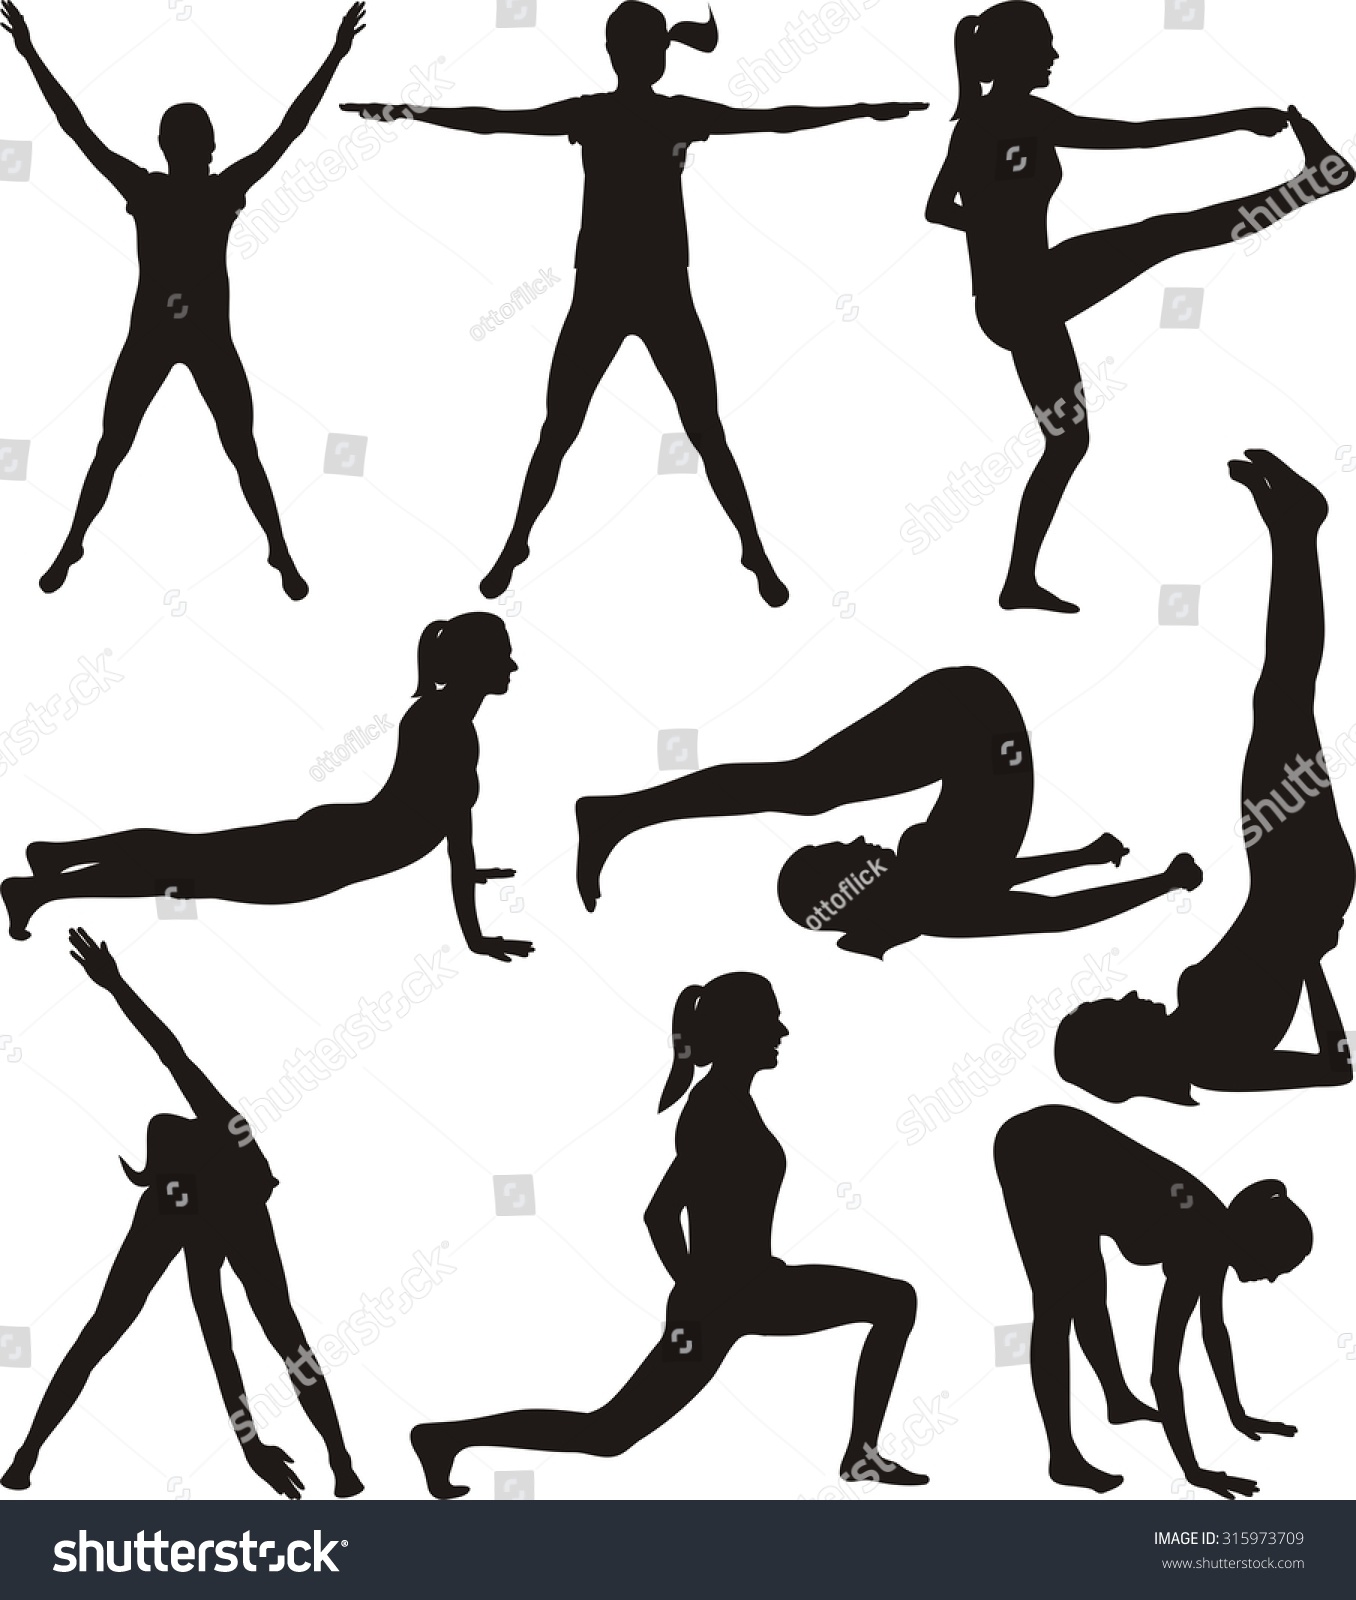 Fitness Silhouettes Of Exercising Women Stock Vector Illustration 315973709 Shutterstock